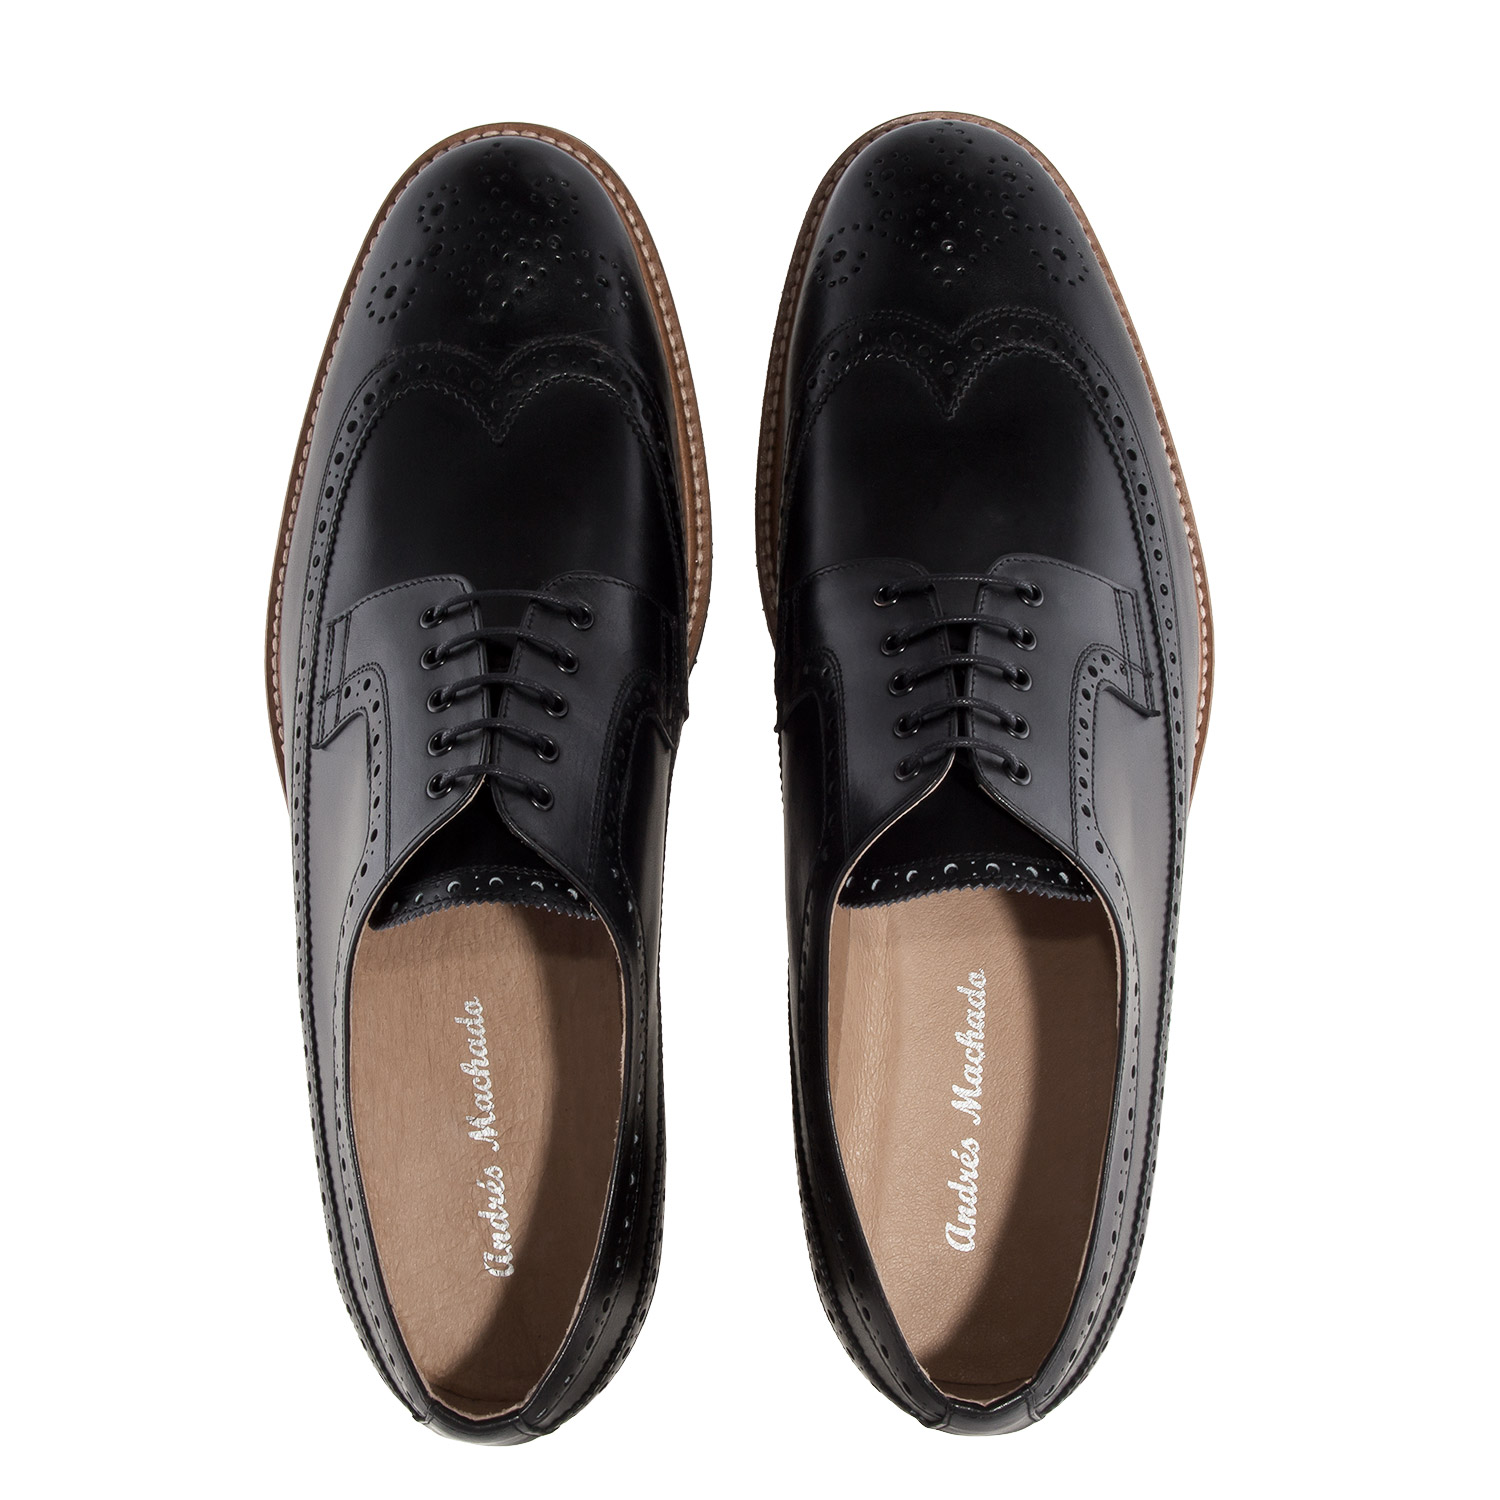 Zapato estilo Oxford en Cuero Negro 